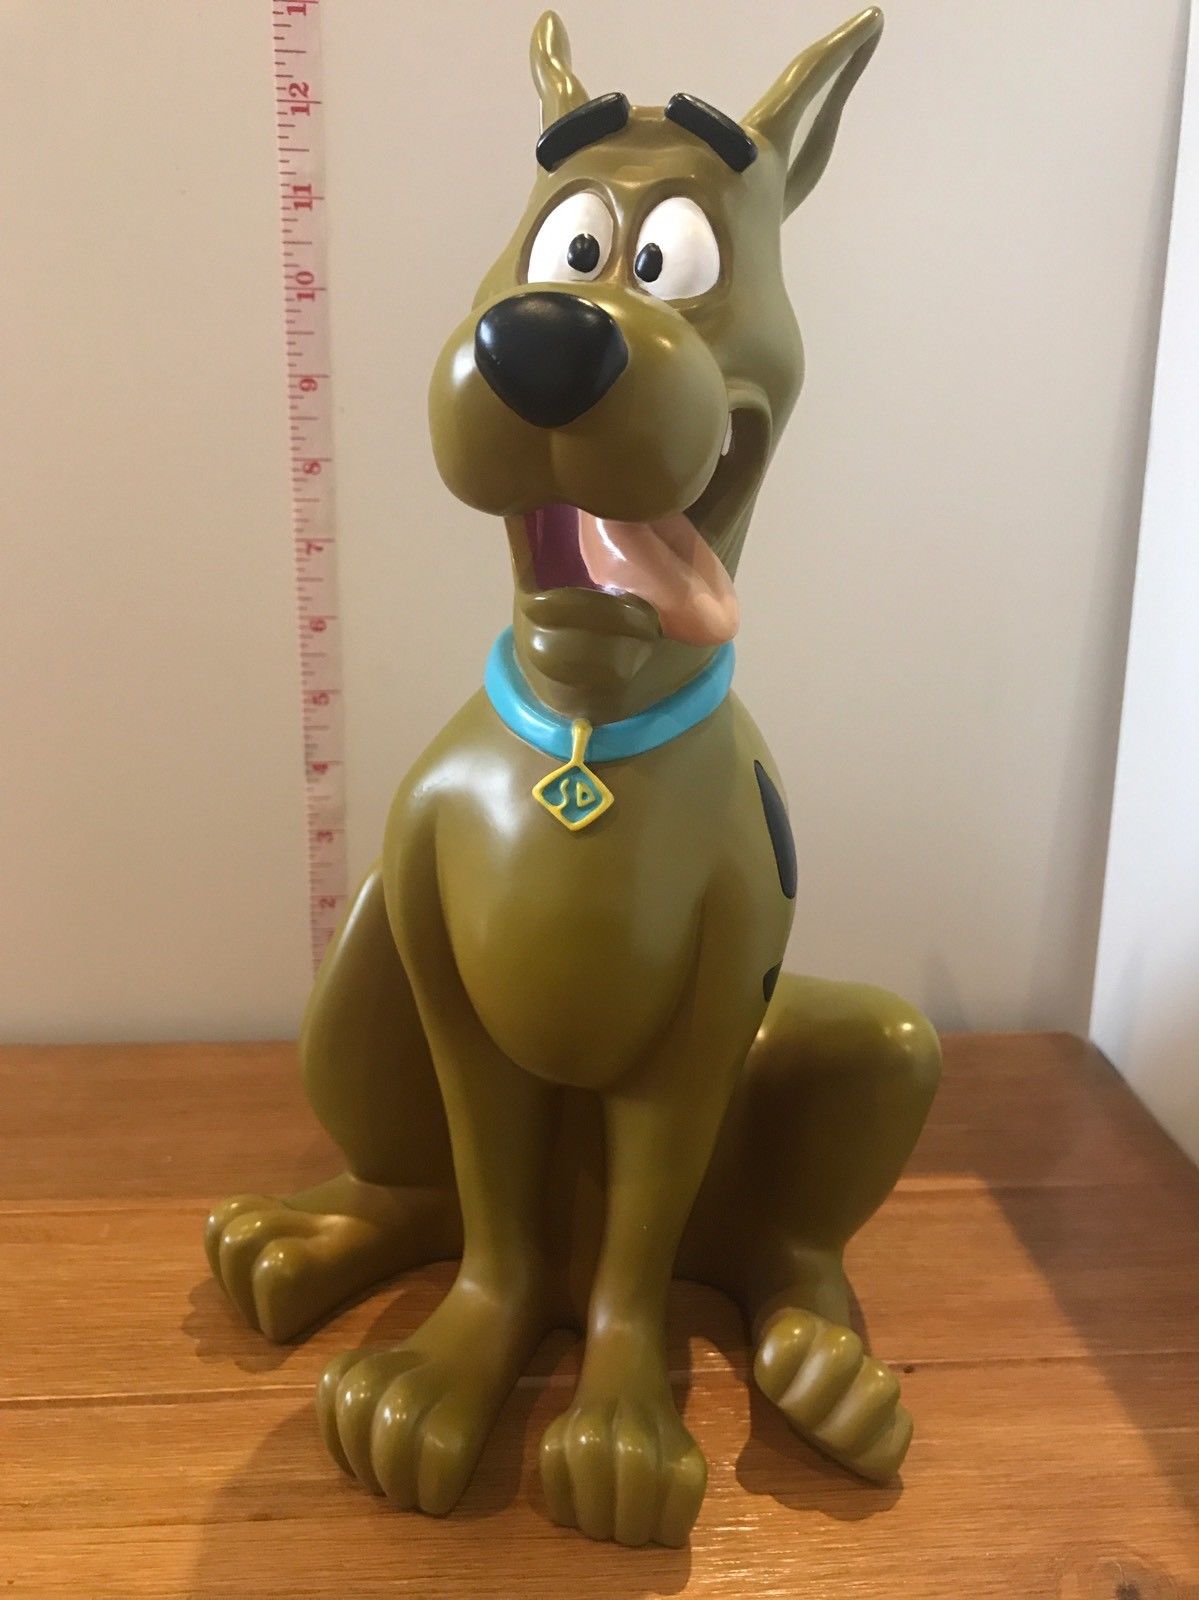 Scooby-Doo : Les objets de collection les plus chers sur eBay